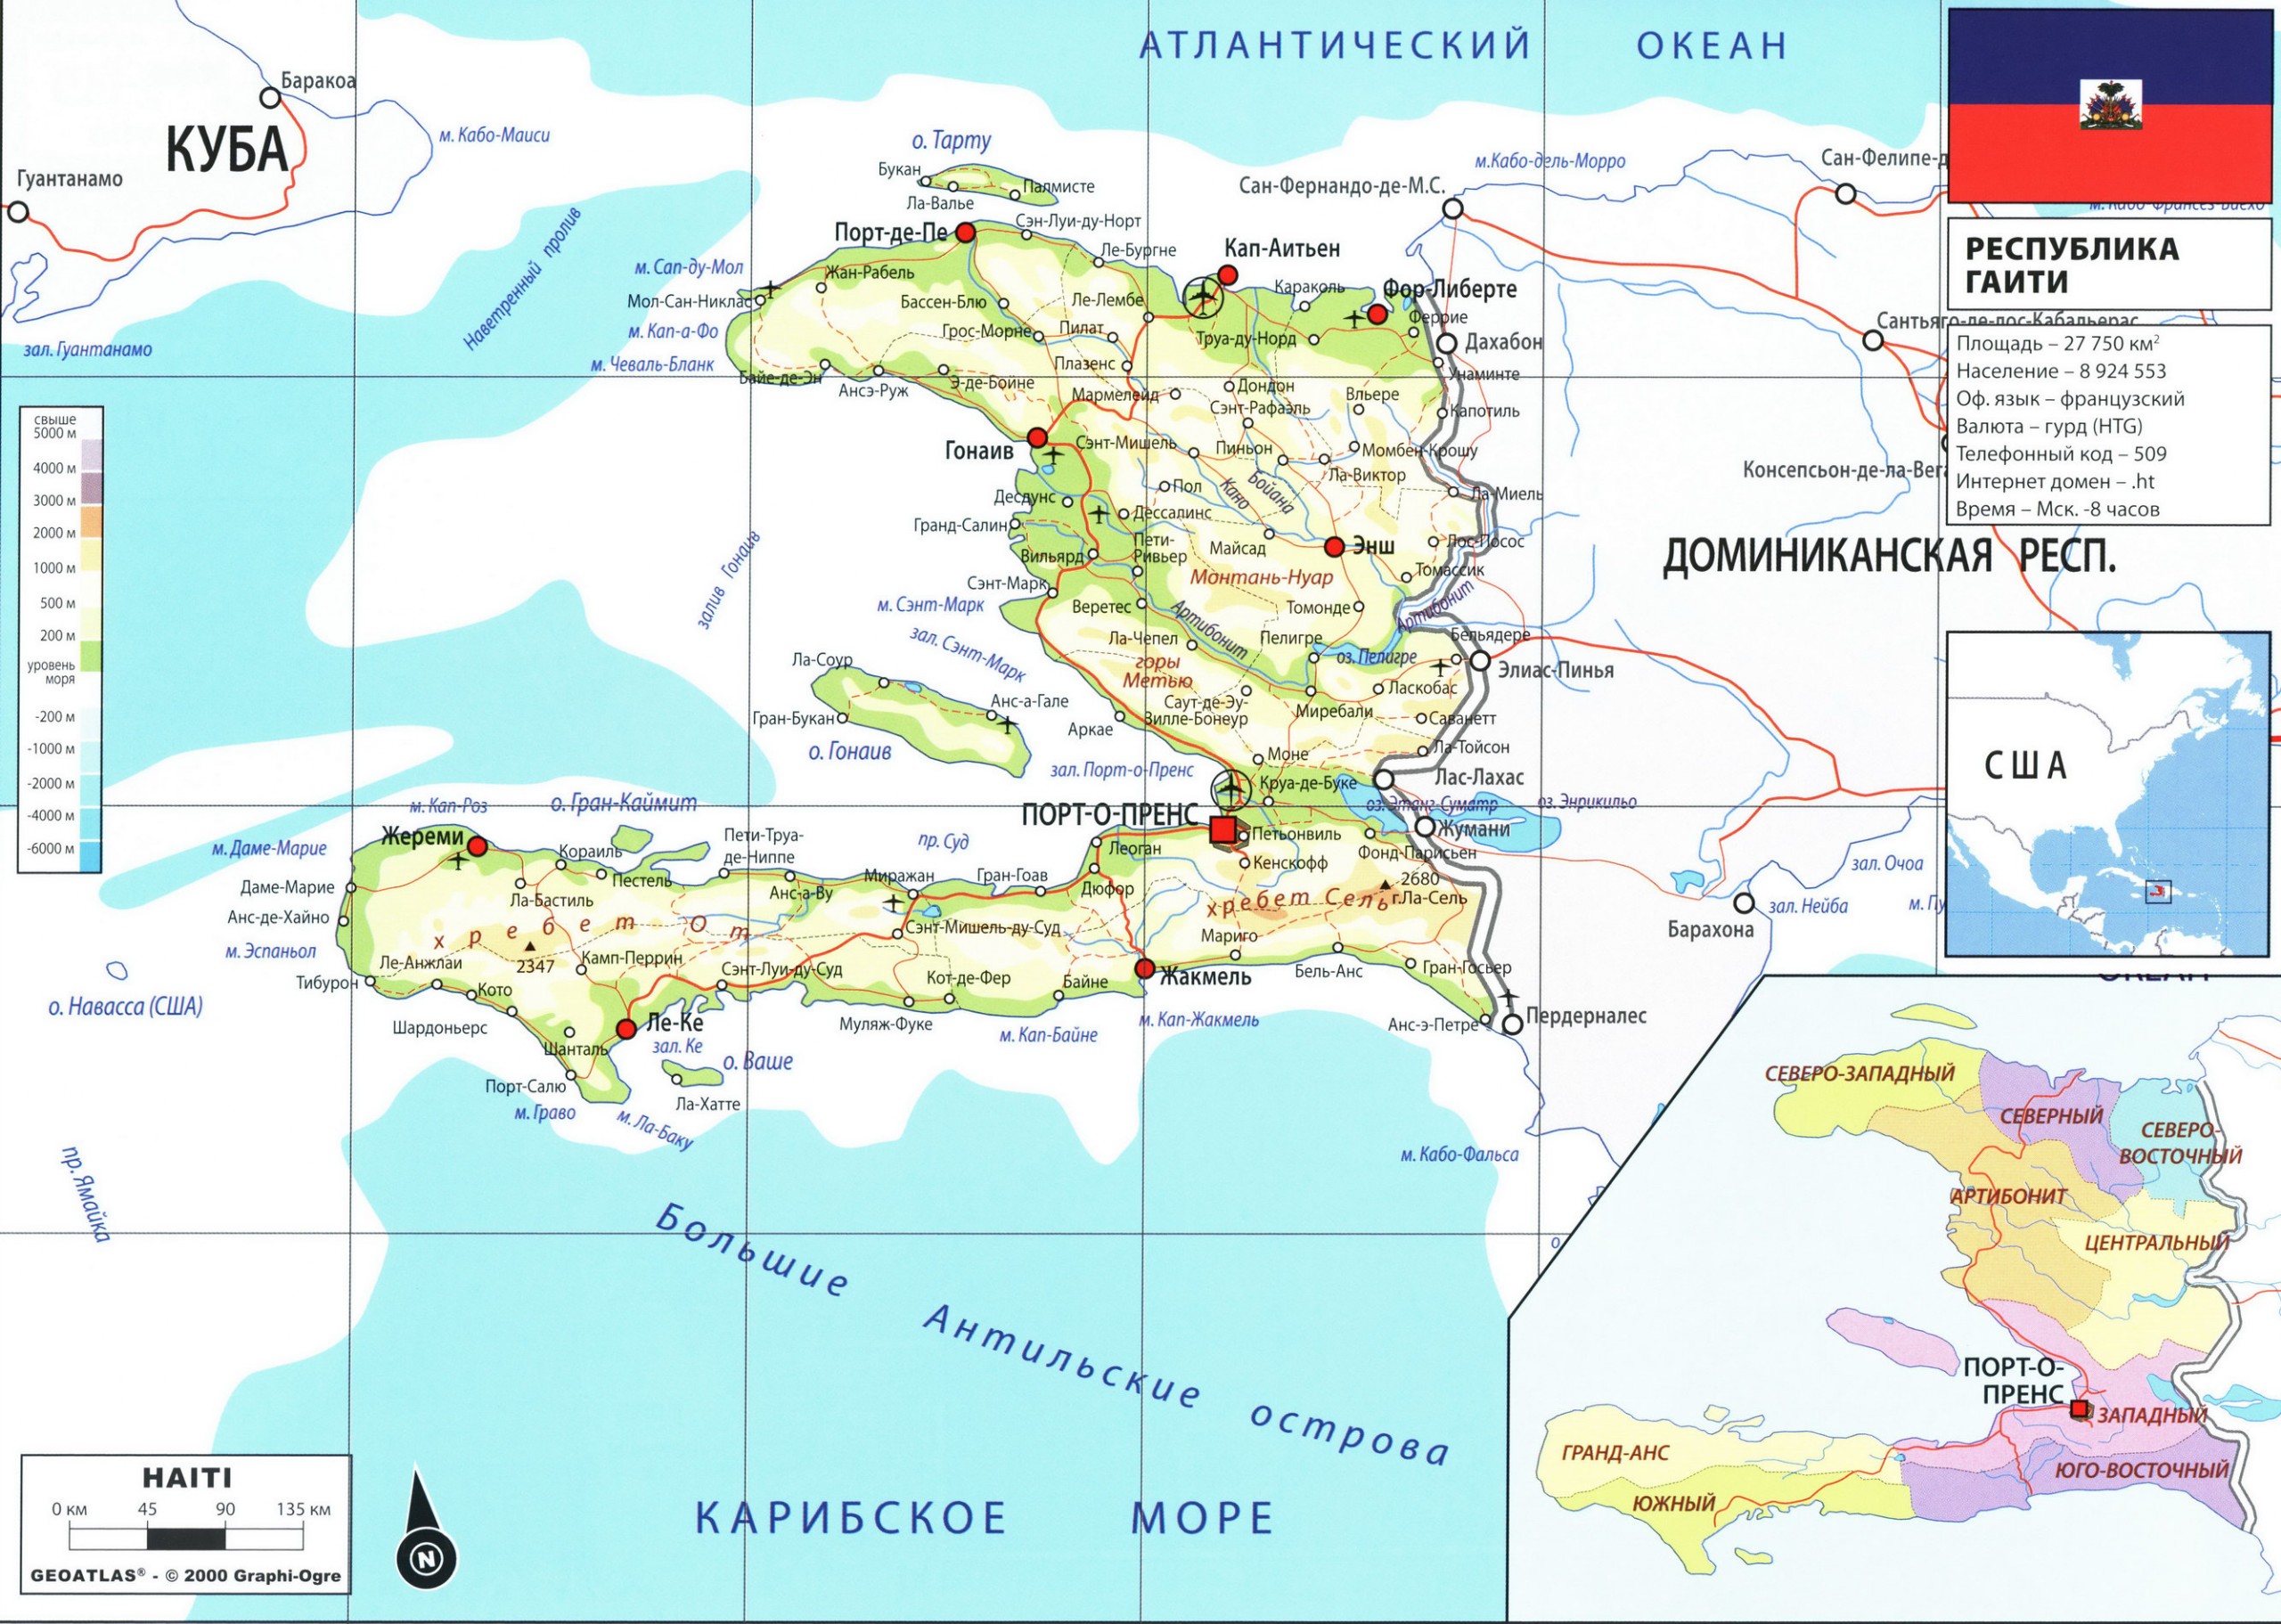 Гаити карта на русском языке